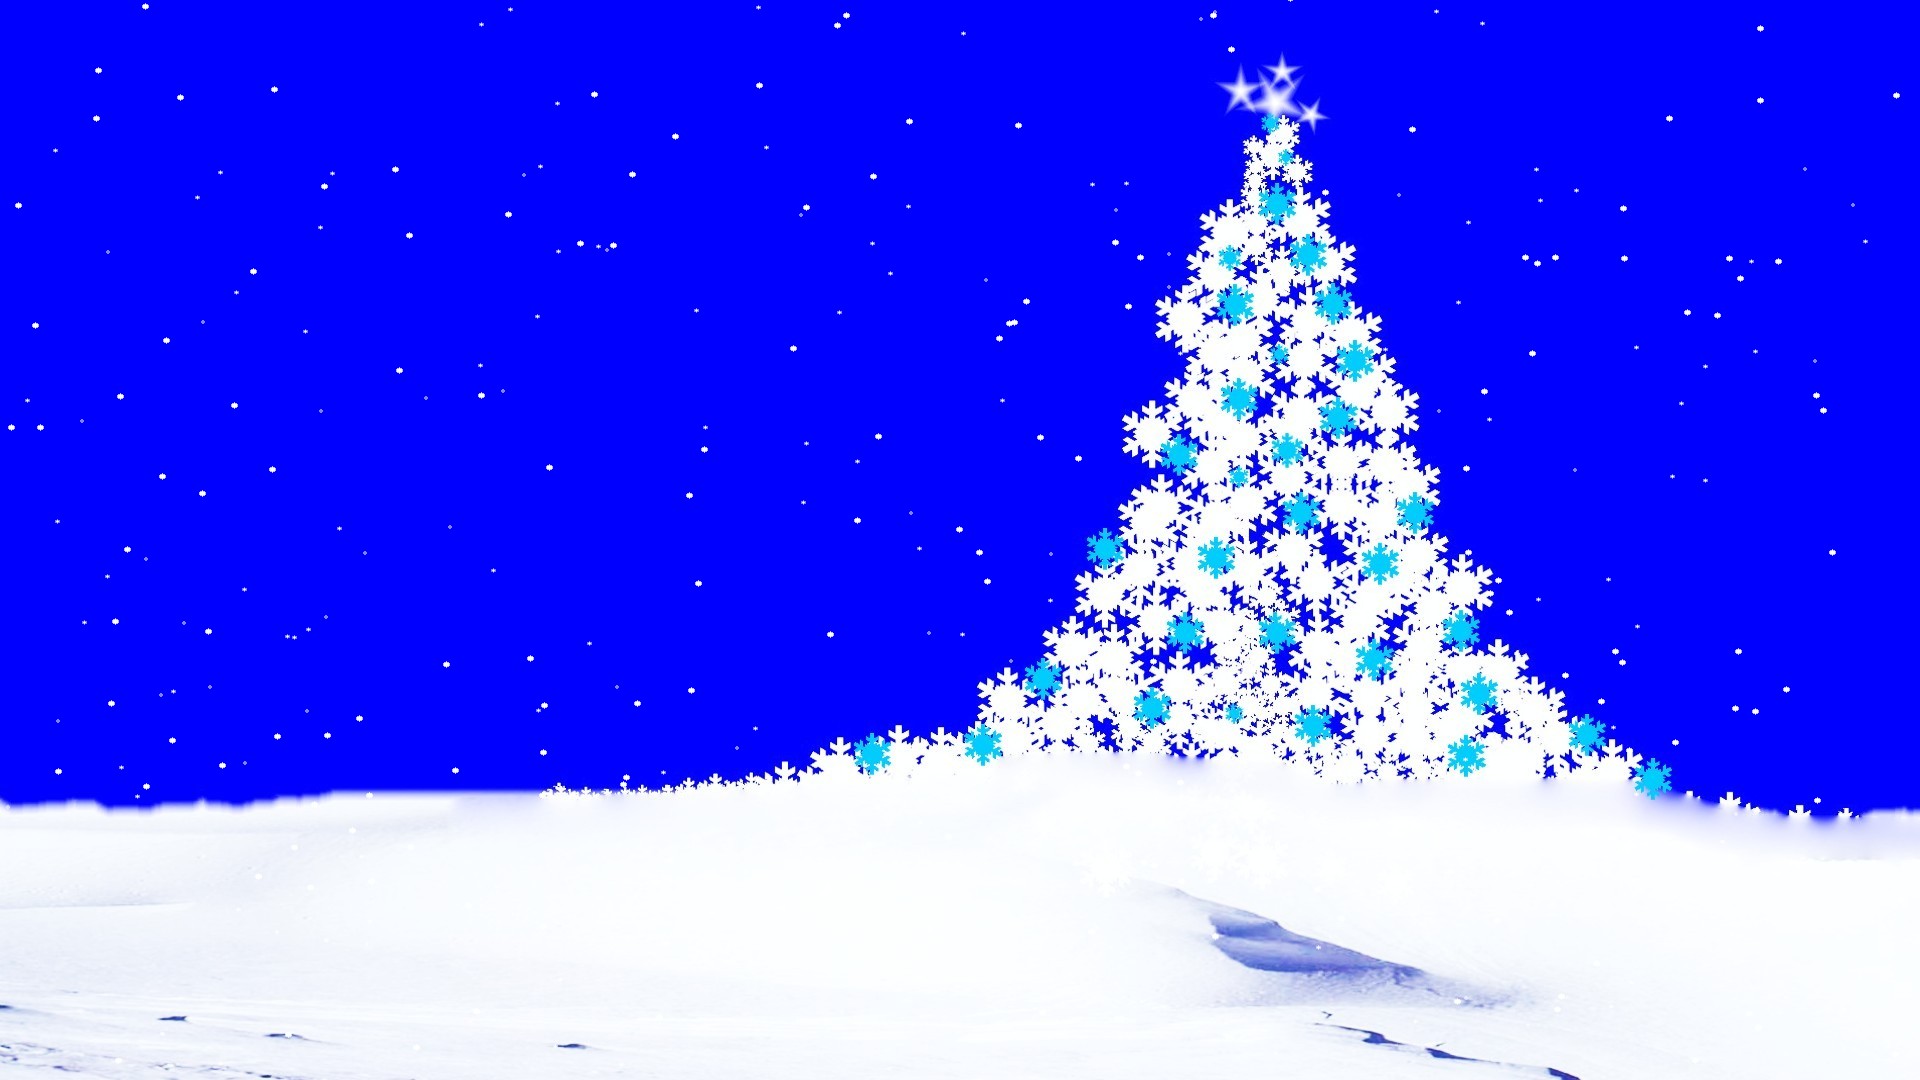 Скачать обои бесплатно Снег, Рождество, Синий, Белый, Рождественская Елка, Праздничные картинка на рабочий стол ПК